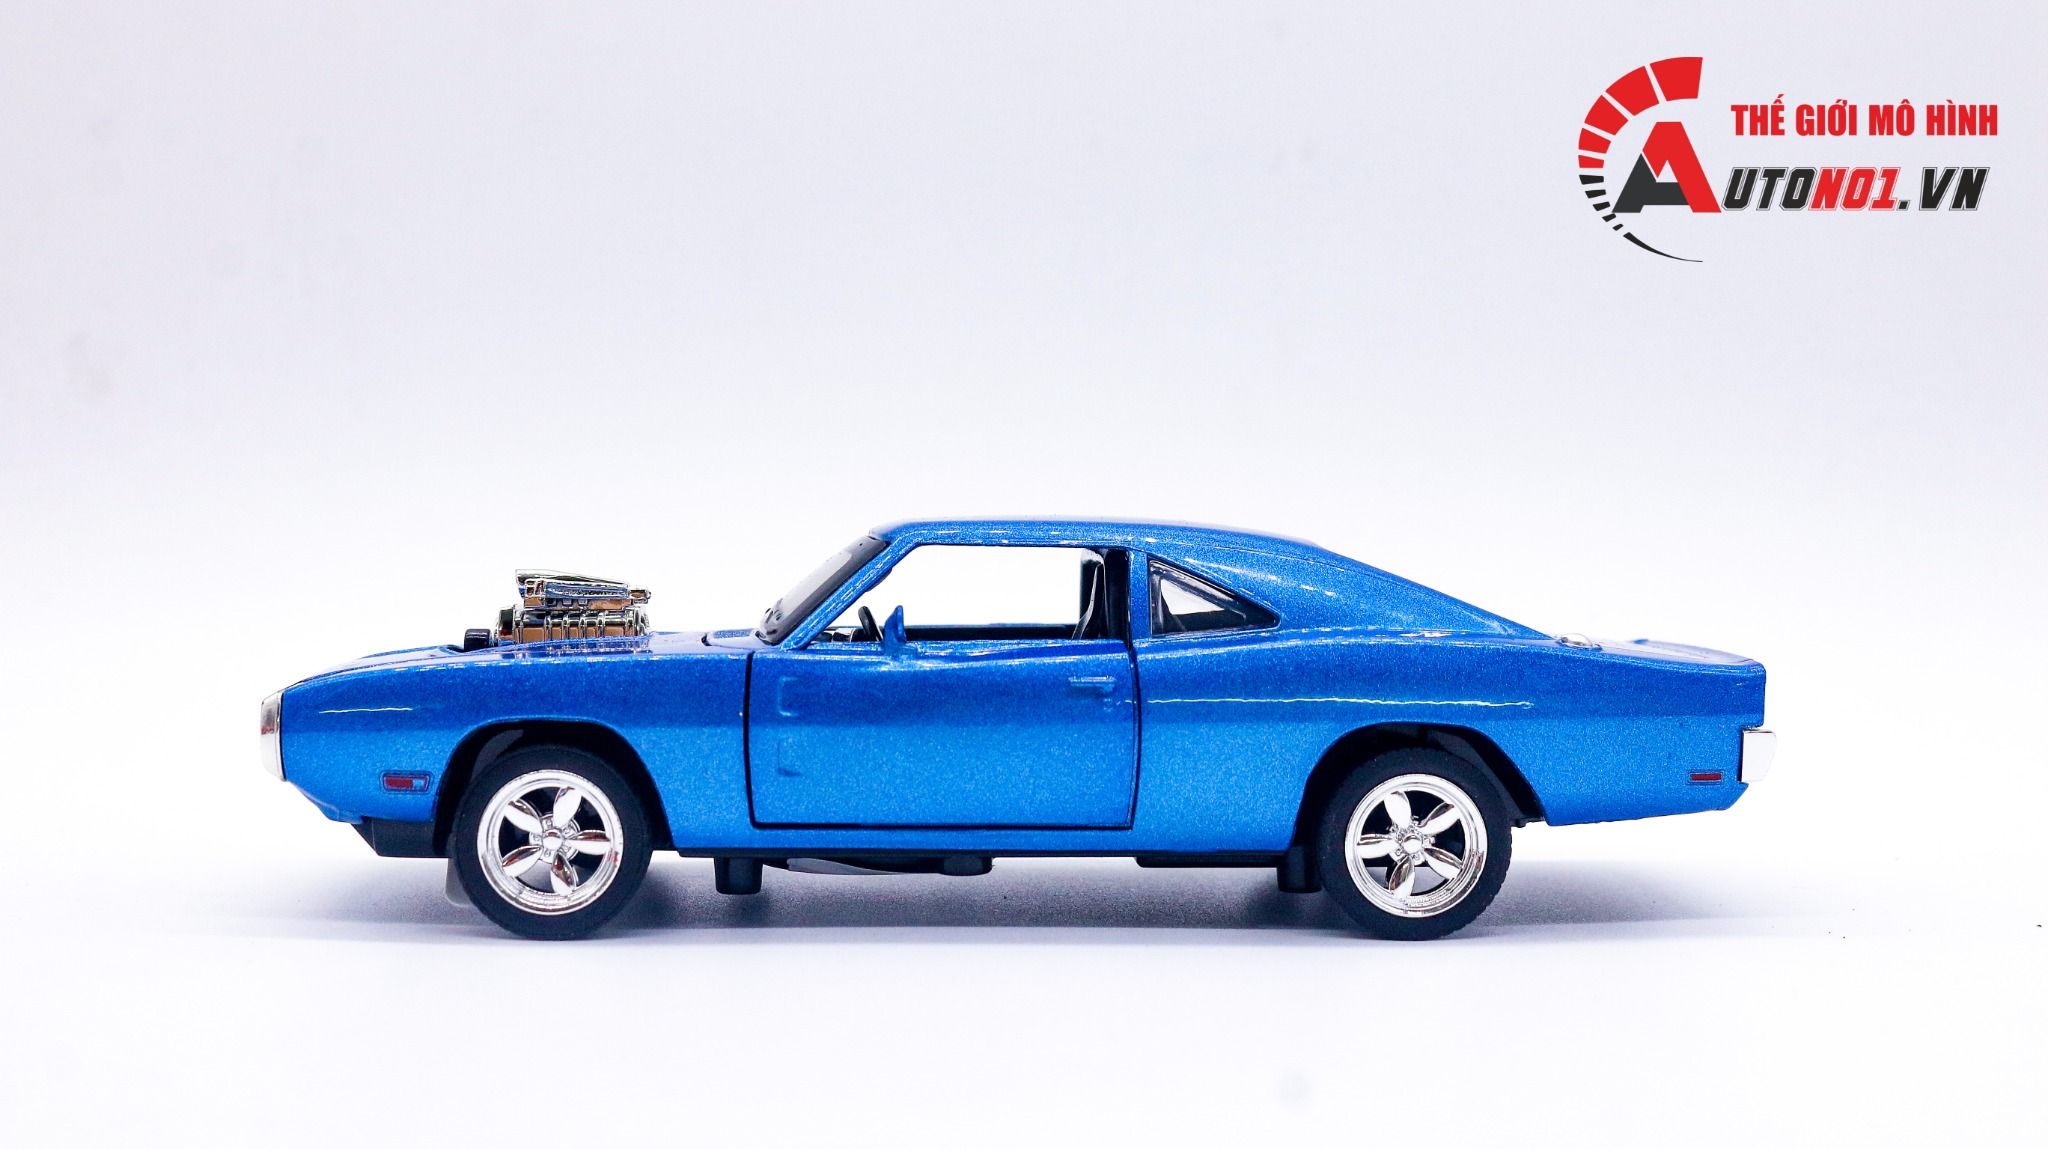  Mô hình xe Dodge Challenger 1970 Fast & Furious tỉ lệ 1:32 Miniauto 1463 32011 